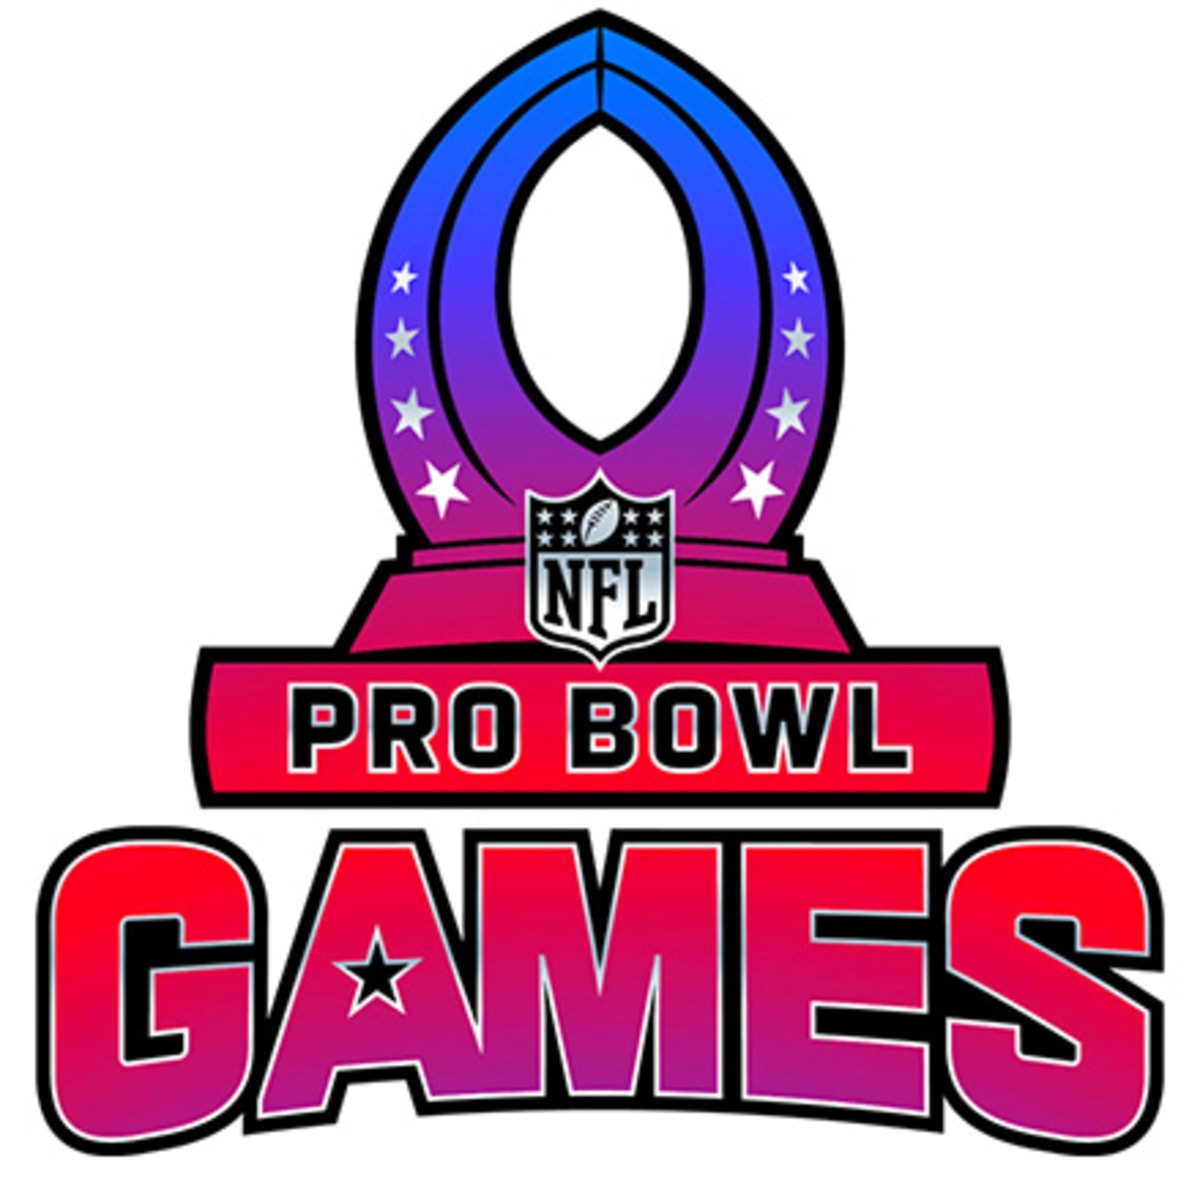 Pat Surtain II named starter for 2023 Pro Bowl Games